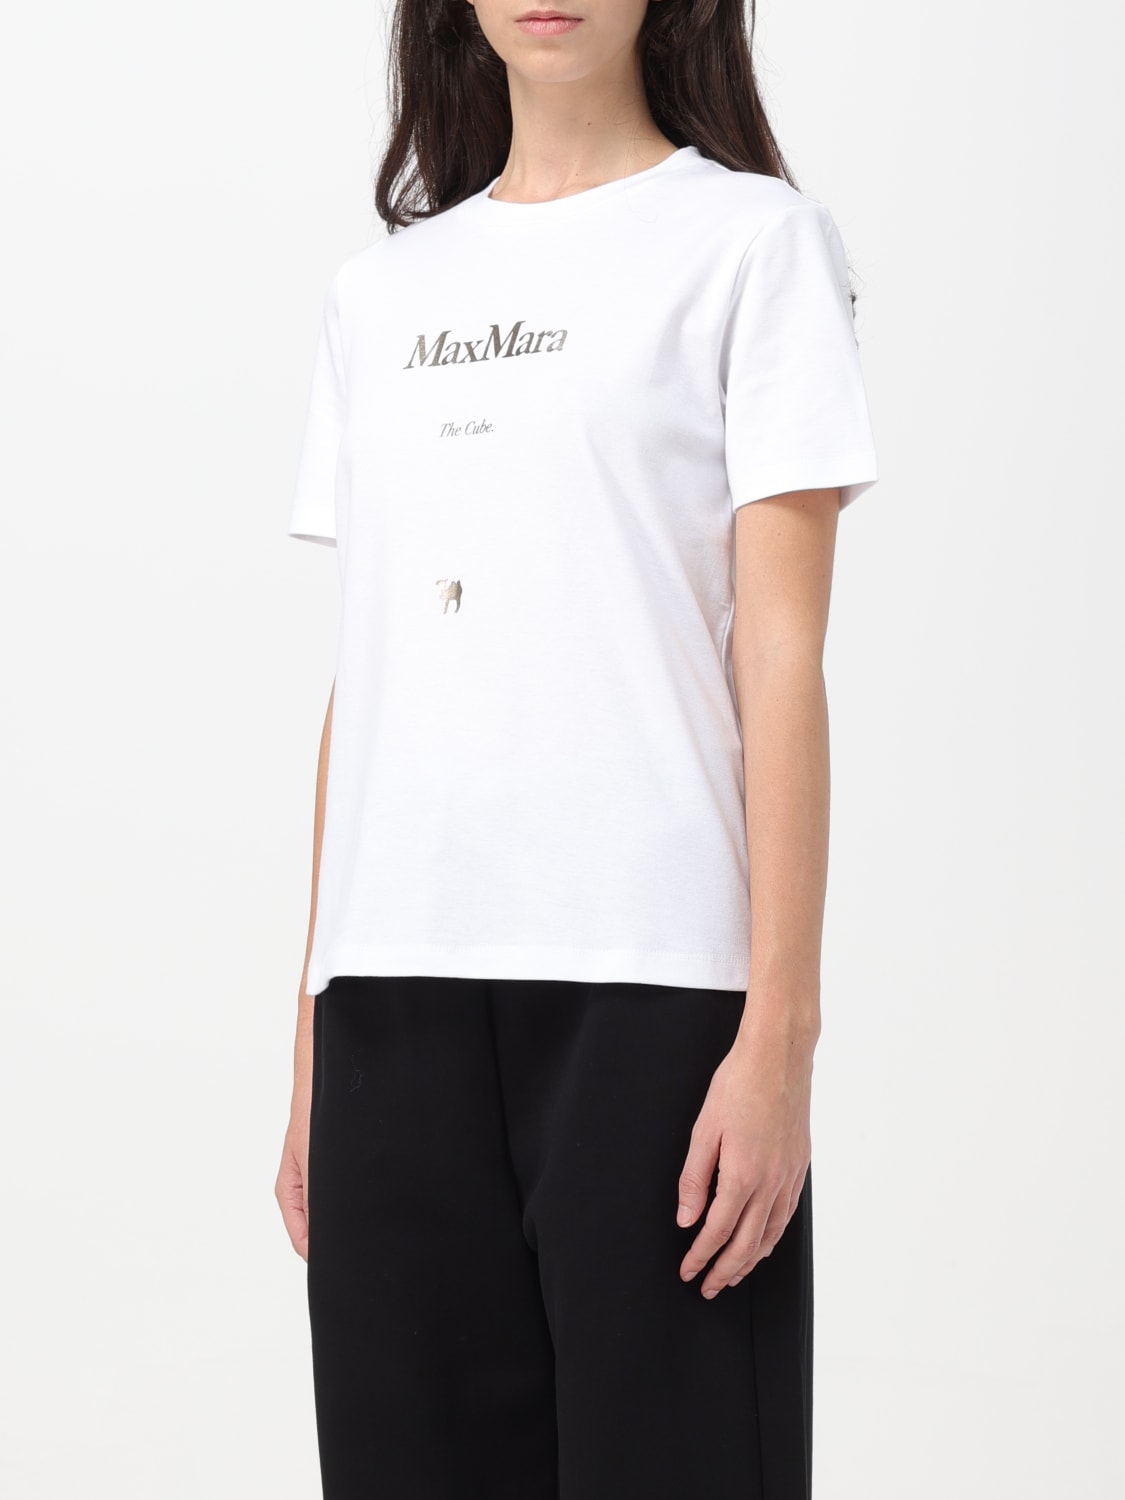 新品未使用新品未使用 Max Mara マックスマーラ ホワイトコットン Tシャツ XS